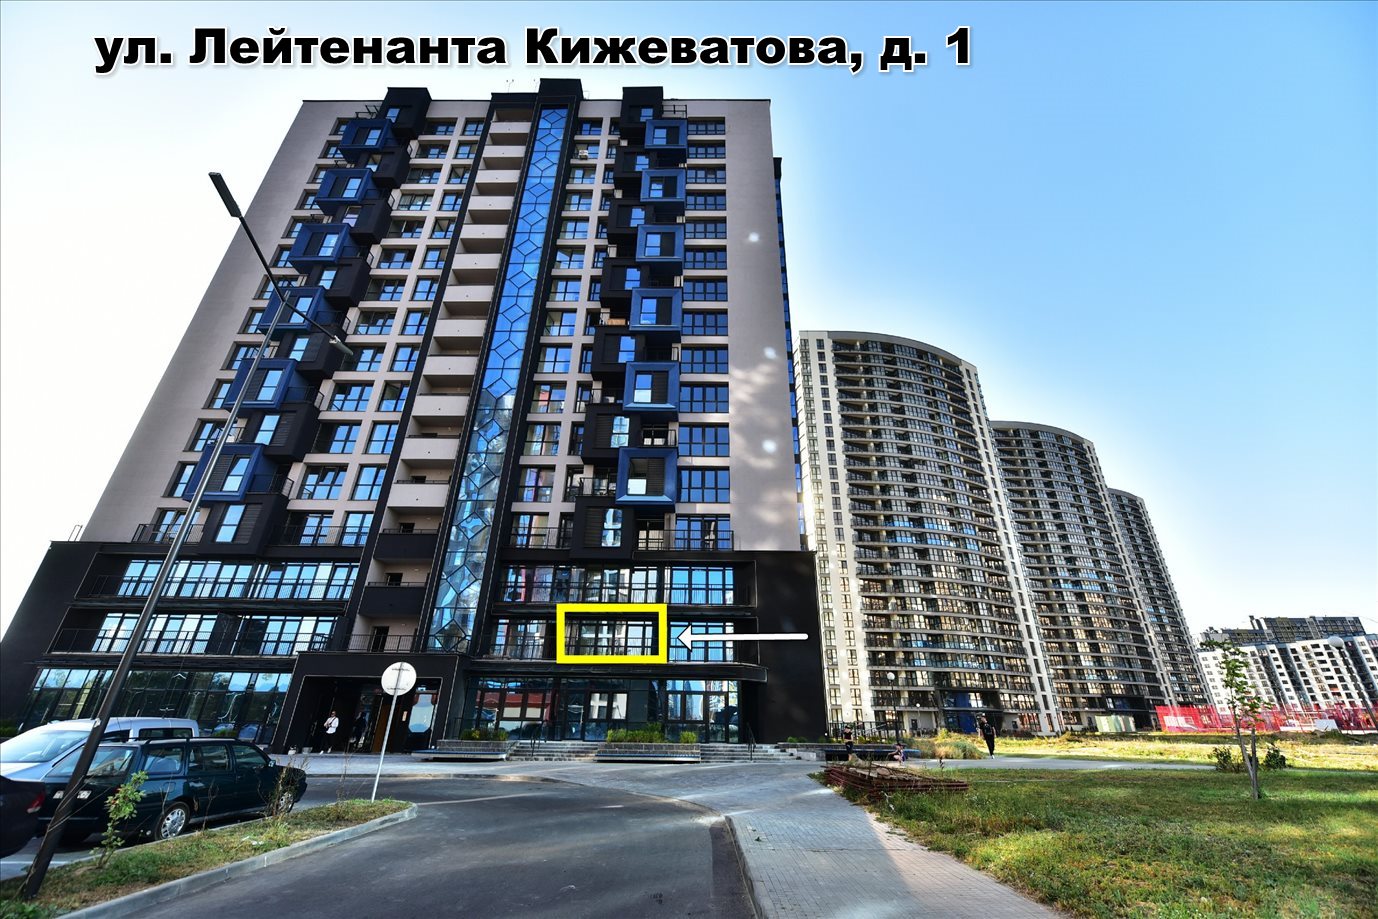 Продам 1-комн. квартиру в Минске, ул. Лейтенанта Кижеватова, д. 1 - фотография